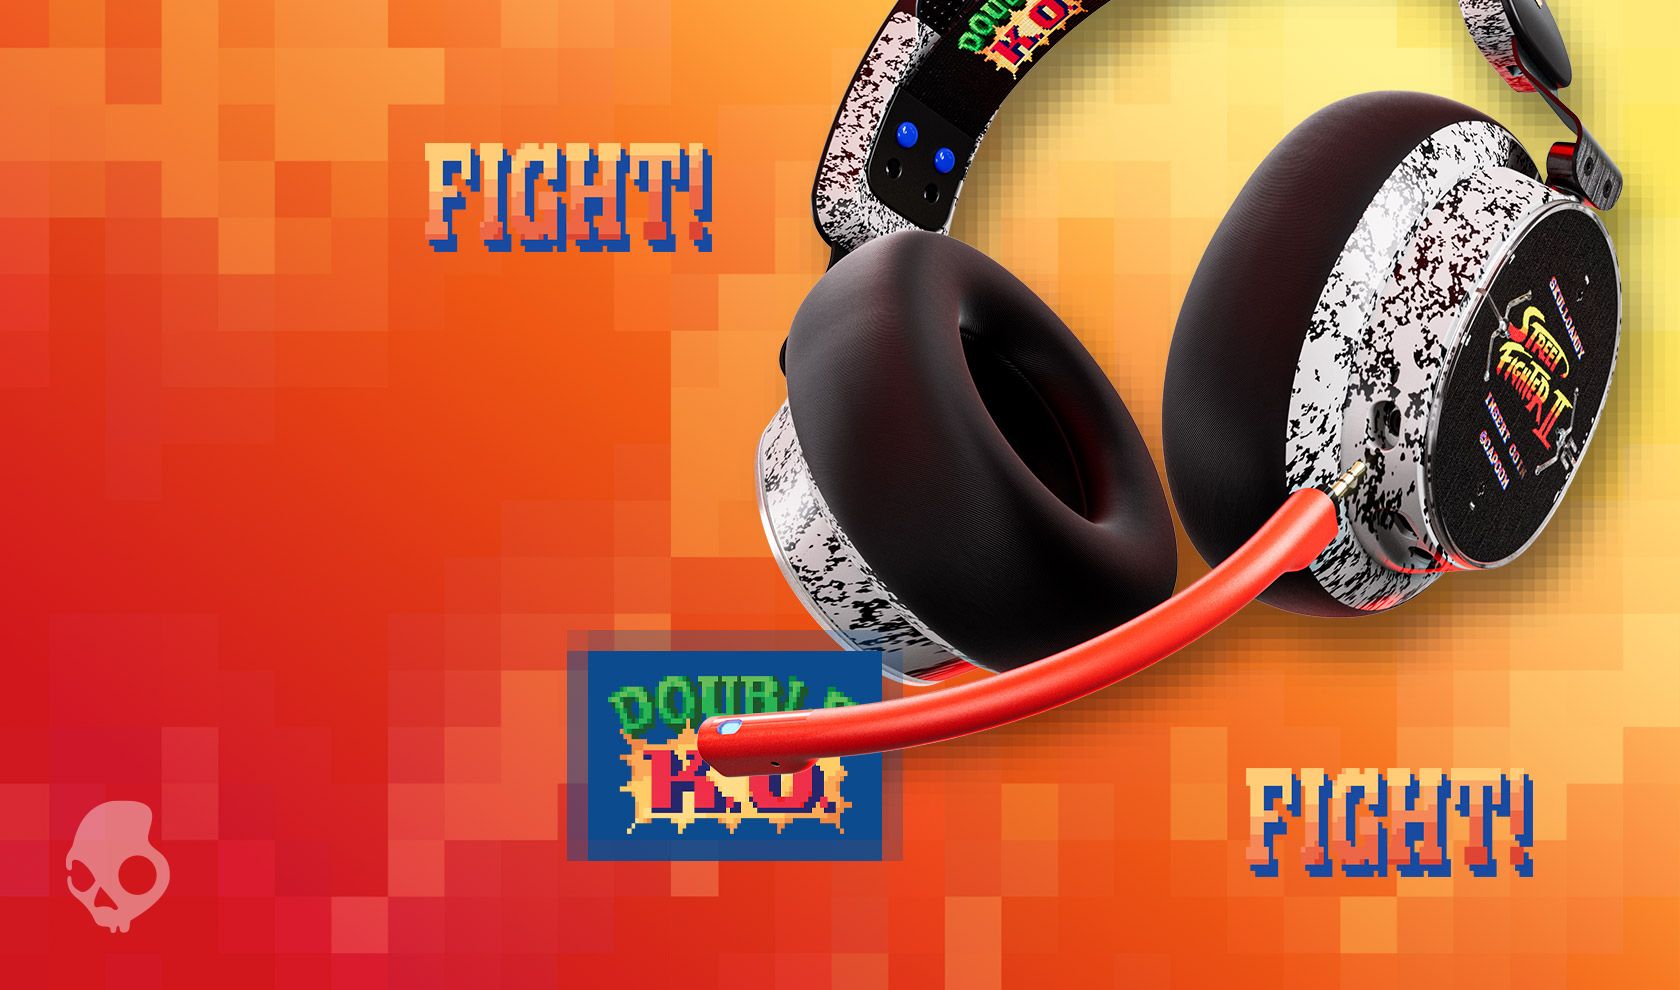 A edição limitada do fone de ouvido Skullcandy Street Fighter 2 pode ser vista com seu microfone laranja conectado à parte inferior do fone de ouvido com um adesivo especial do Street Fighter 2 incluído na lateral do fone de ouvido.